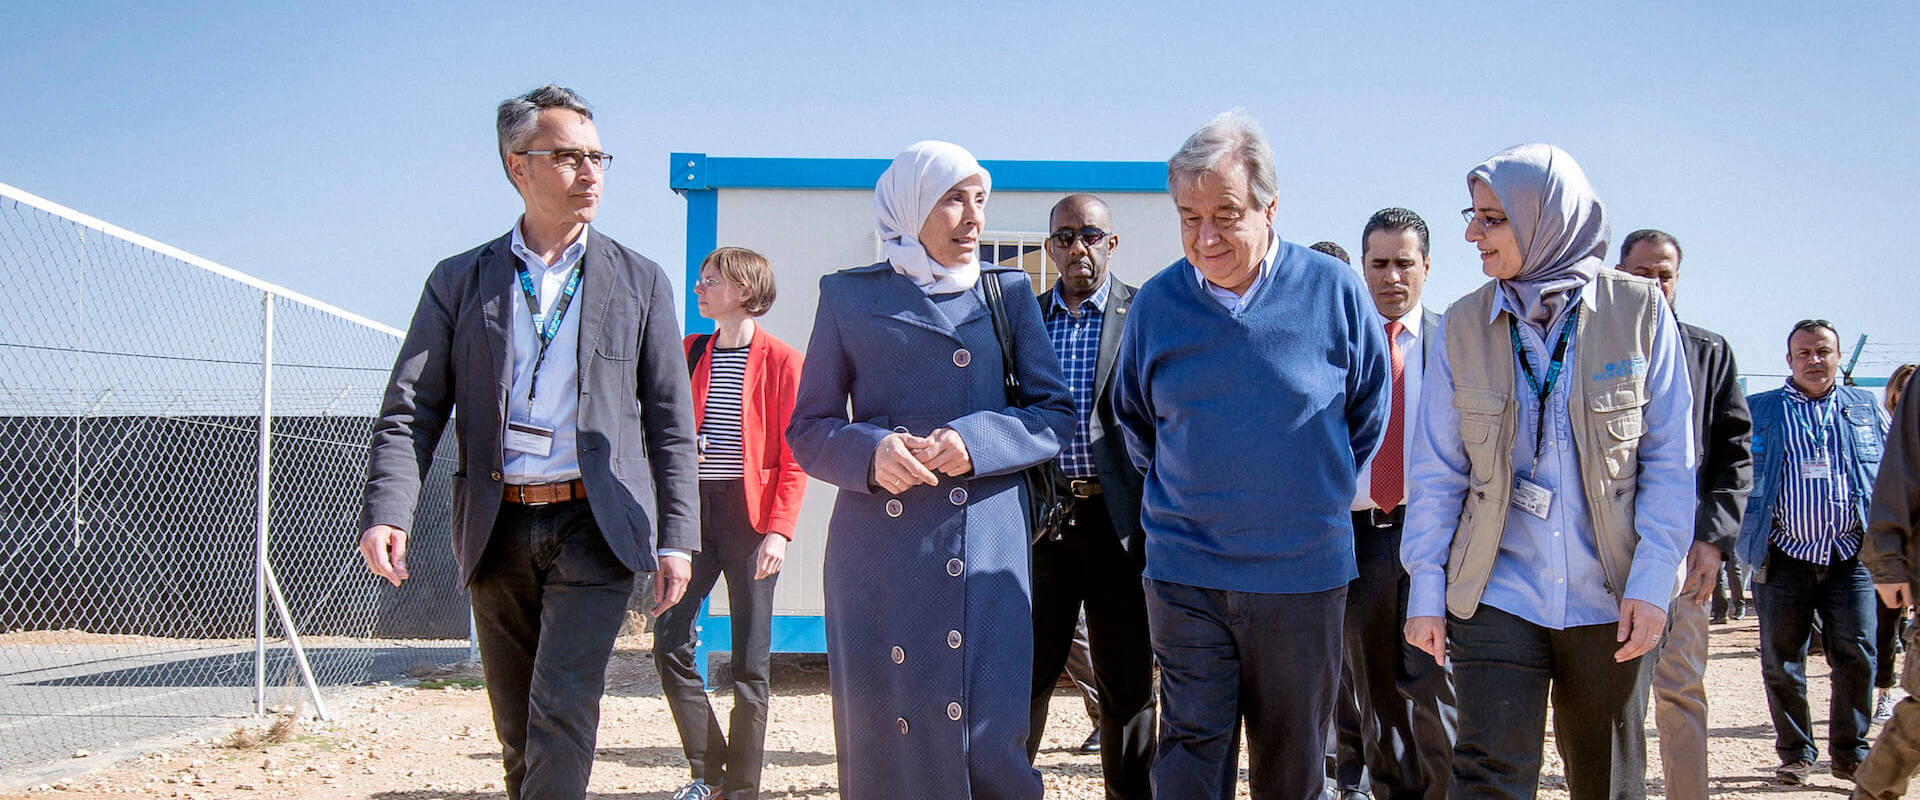 En mars 2017, le Secrétaire général de l'ONU, António Guterres, visite le centre d'ONU Femmes dans le camp de réfugiés de Za'atari en Jordanie pour interagir avec des femmes et des filles réfugiées syriennes résidant en Jordanie. 